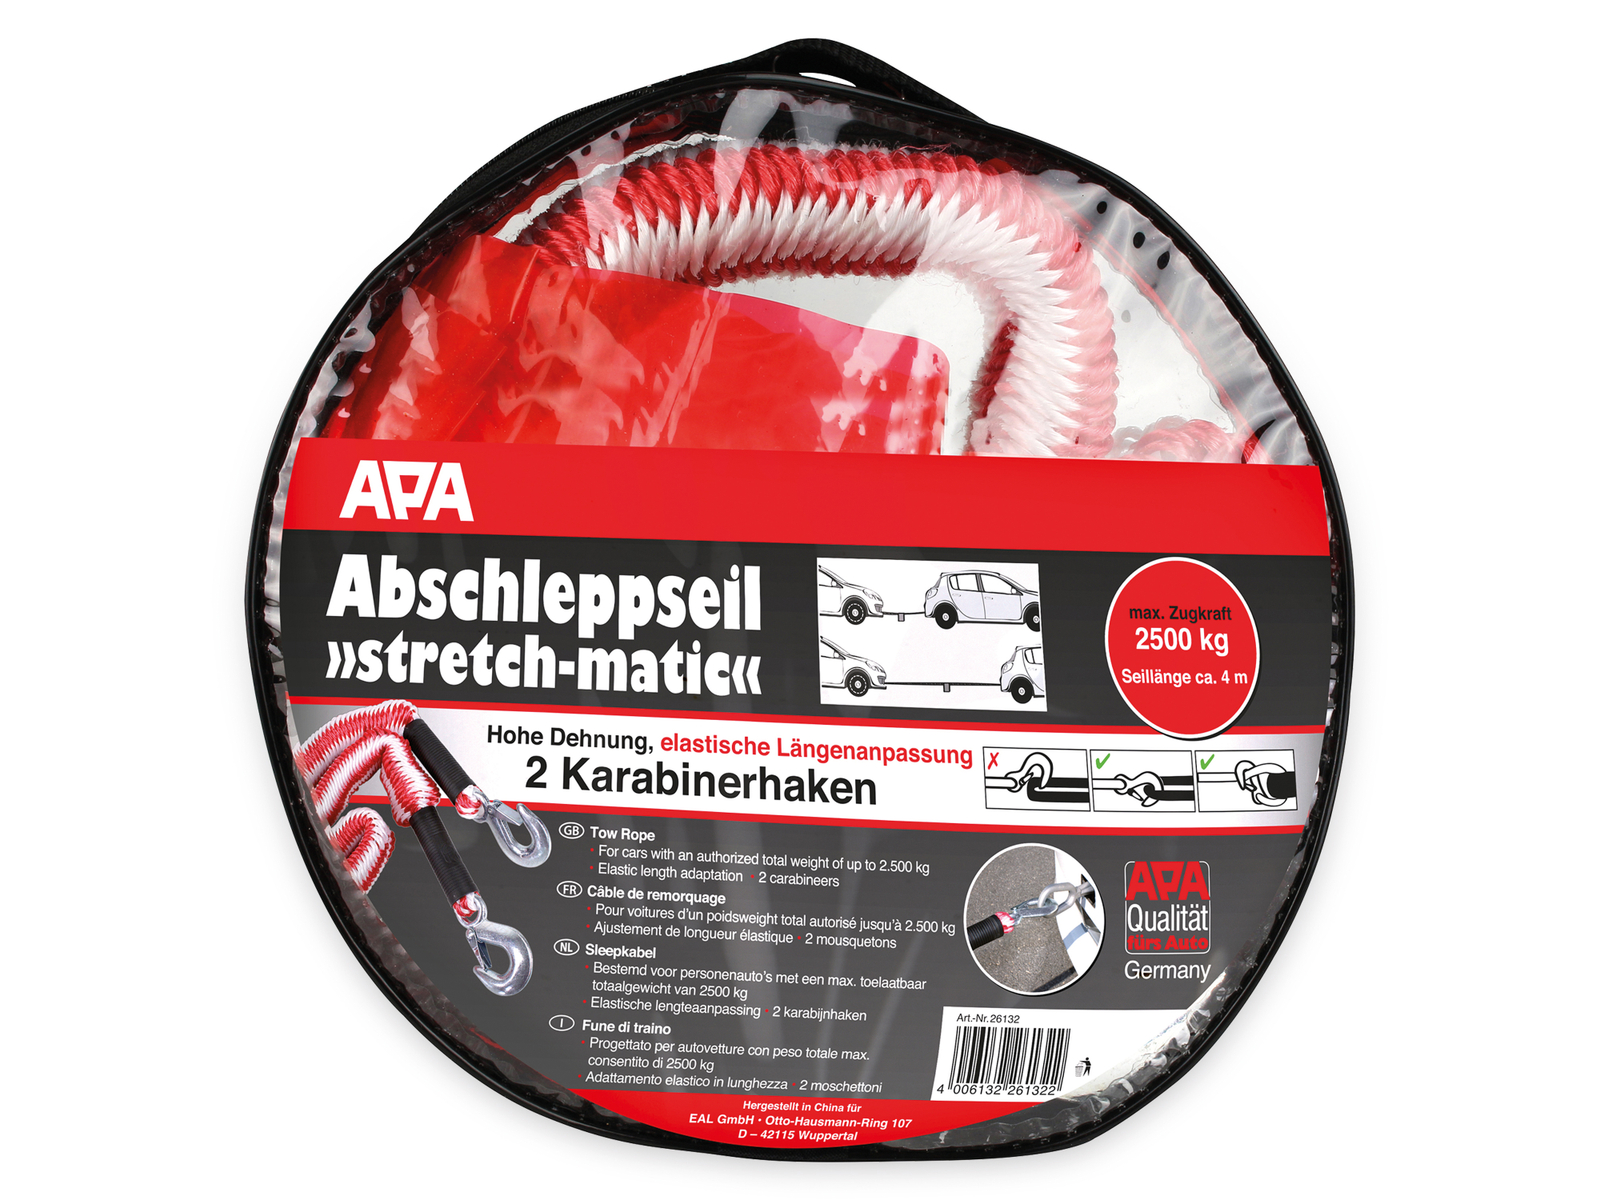 APA Abschleppseil 26132, Stretch-matic, max. 2500 kg, 4 m online kaufen